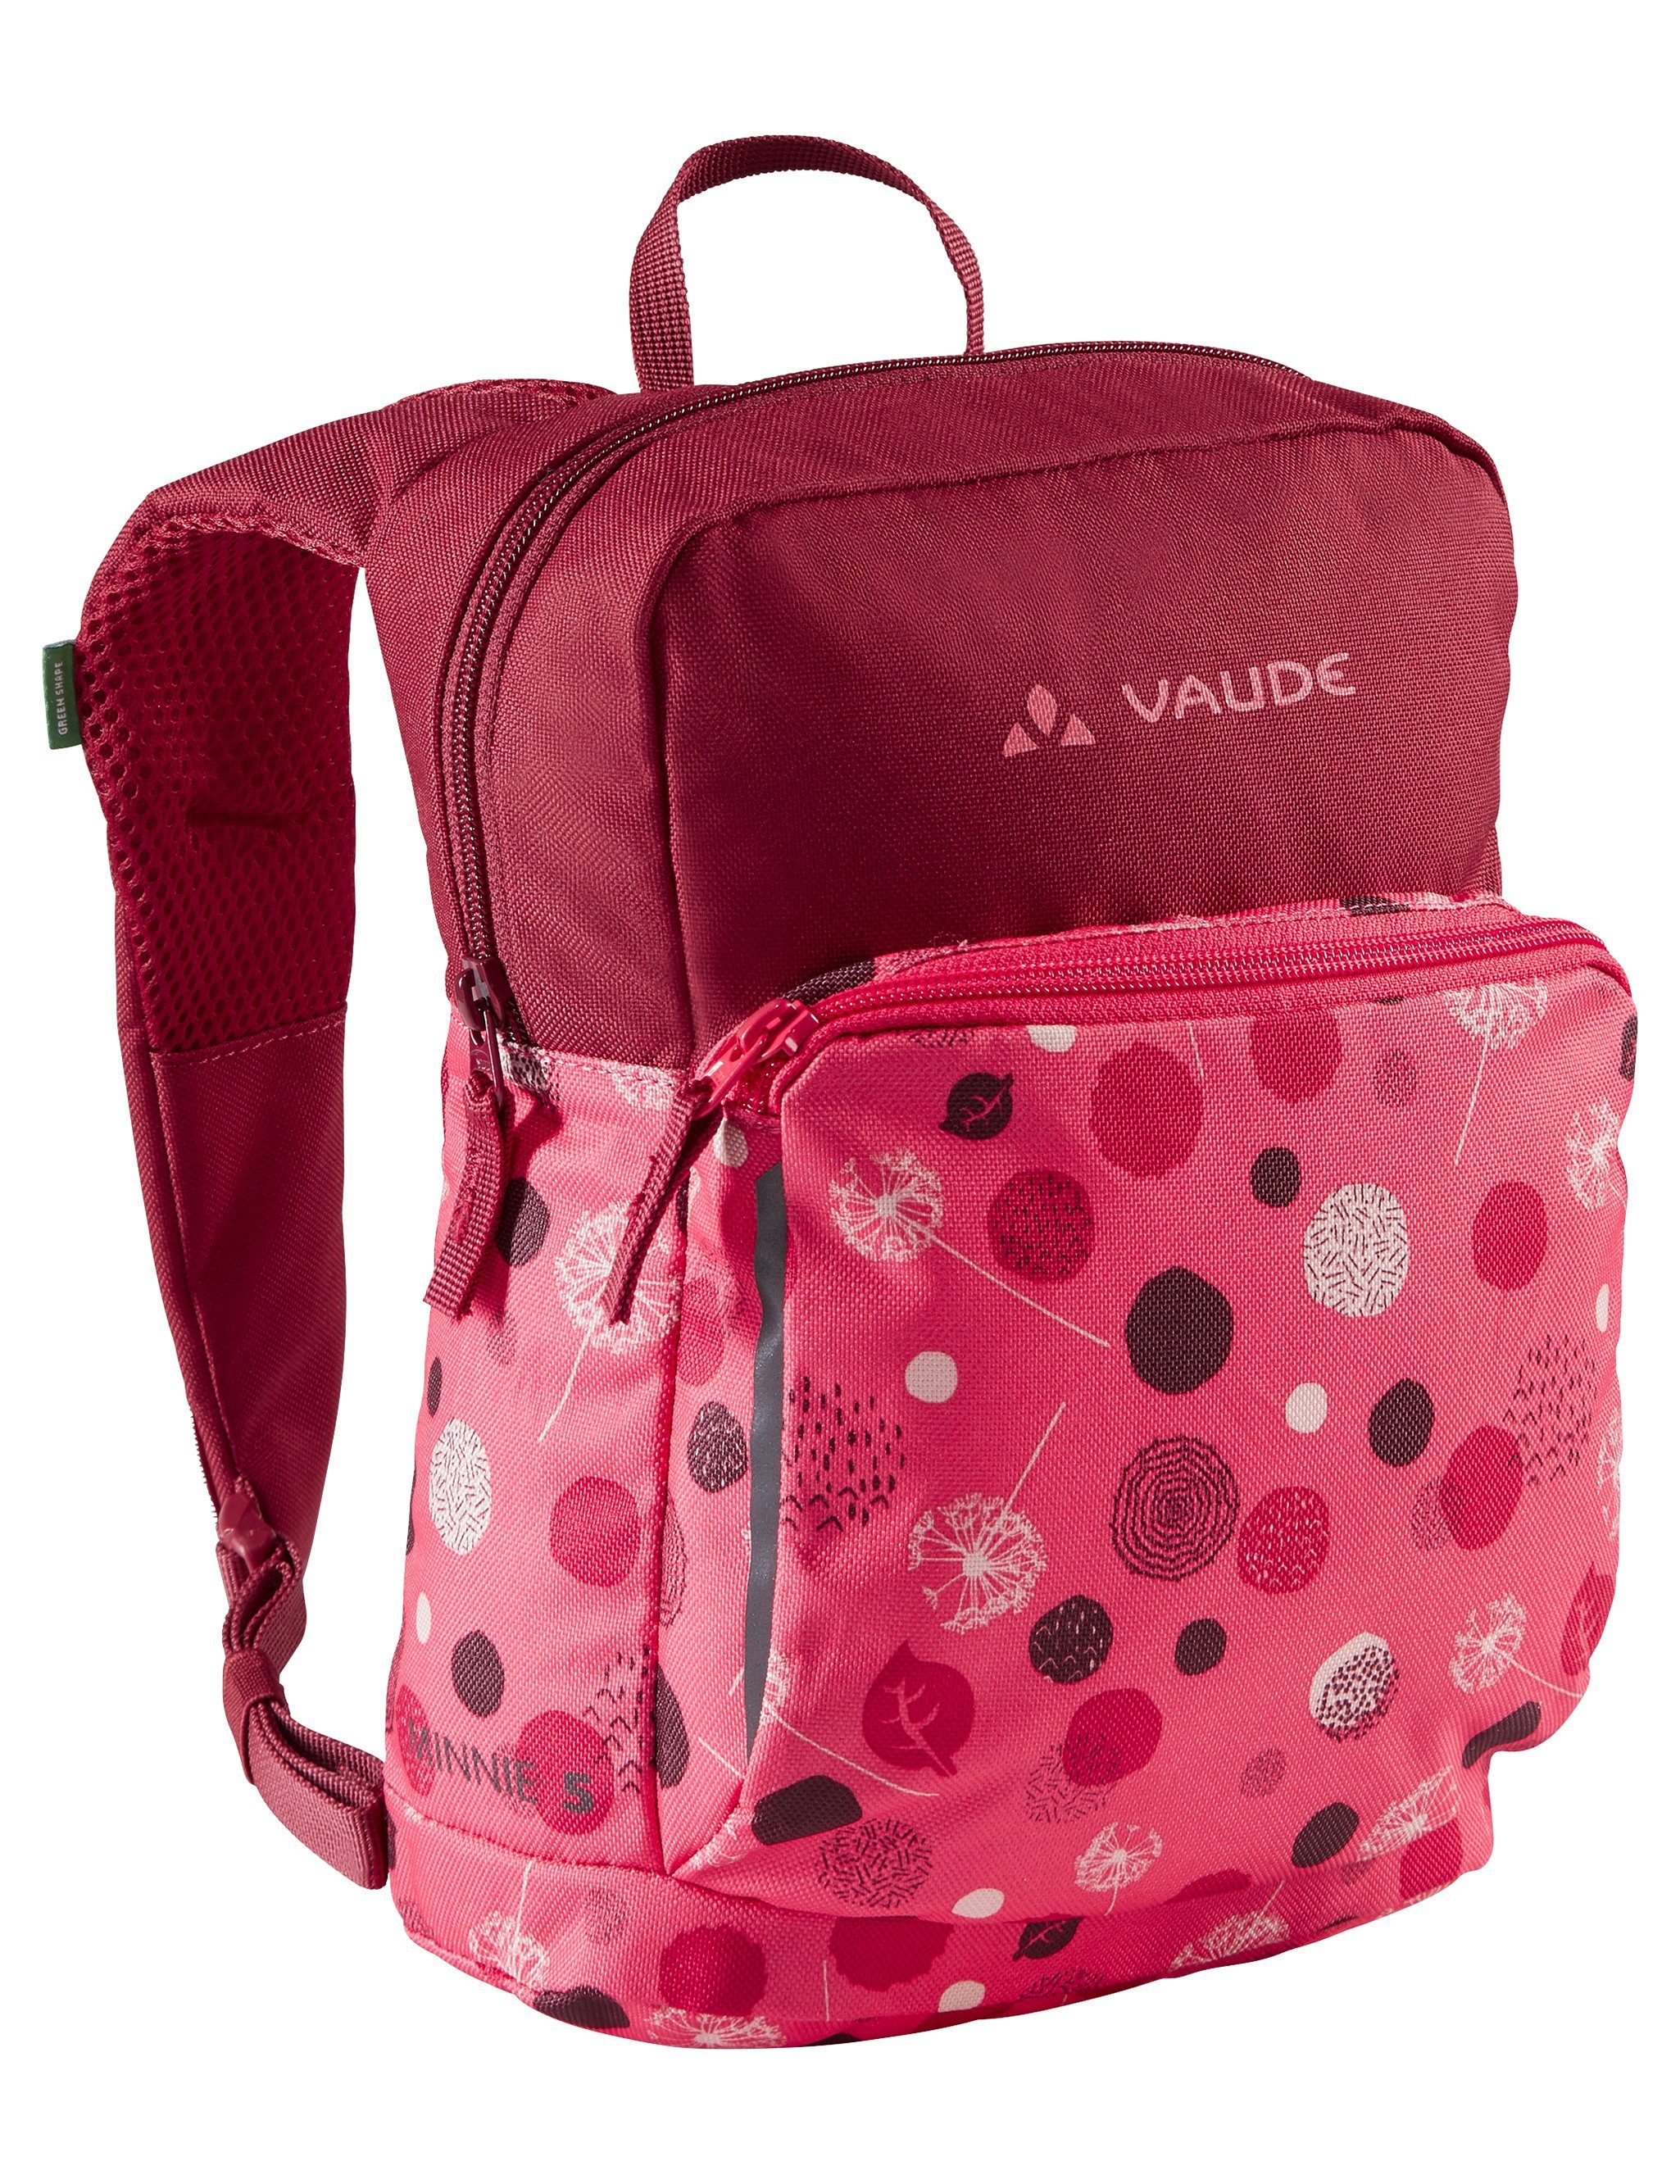 VAUDE Cityrucksack Minnie 5 bright pink/cranberry